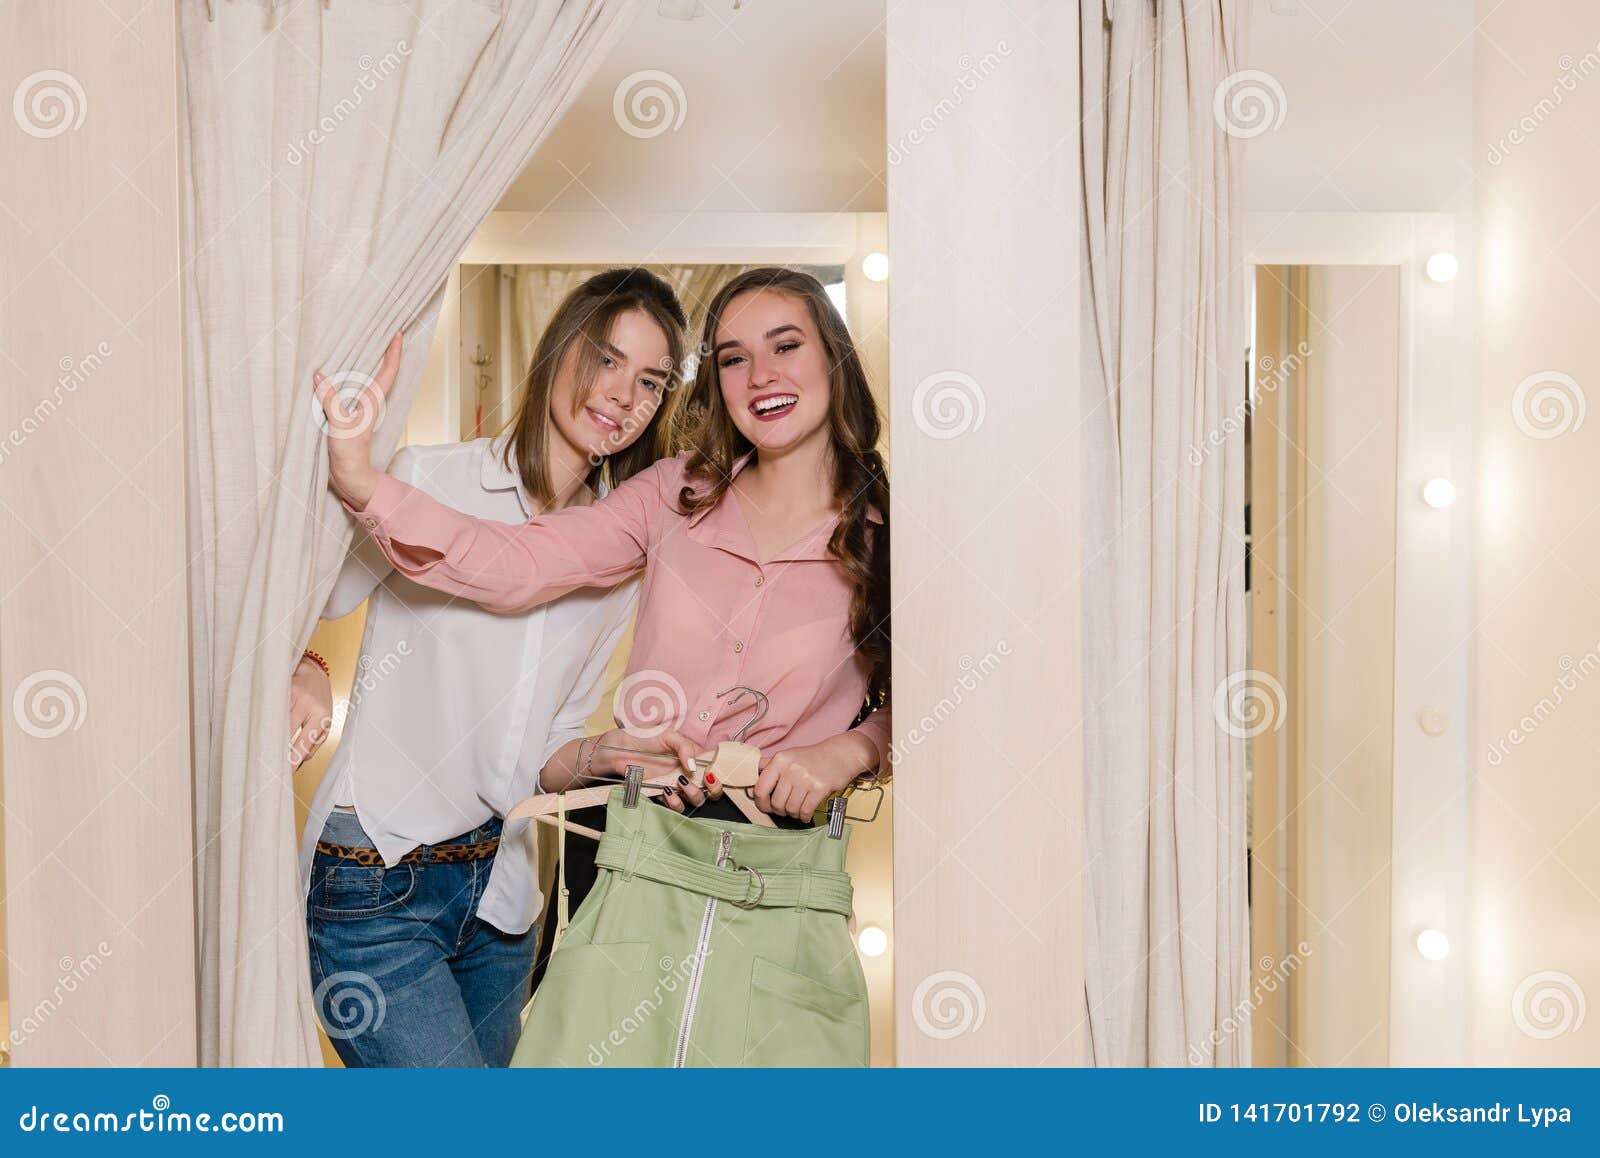 Lesbian Fitting Room